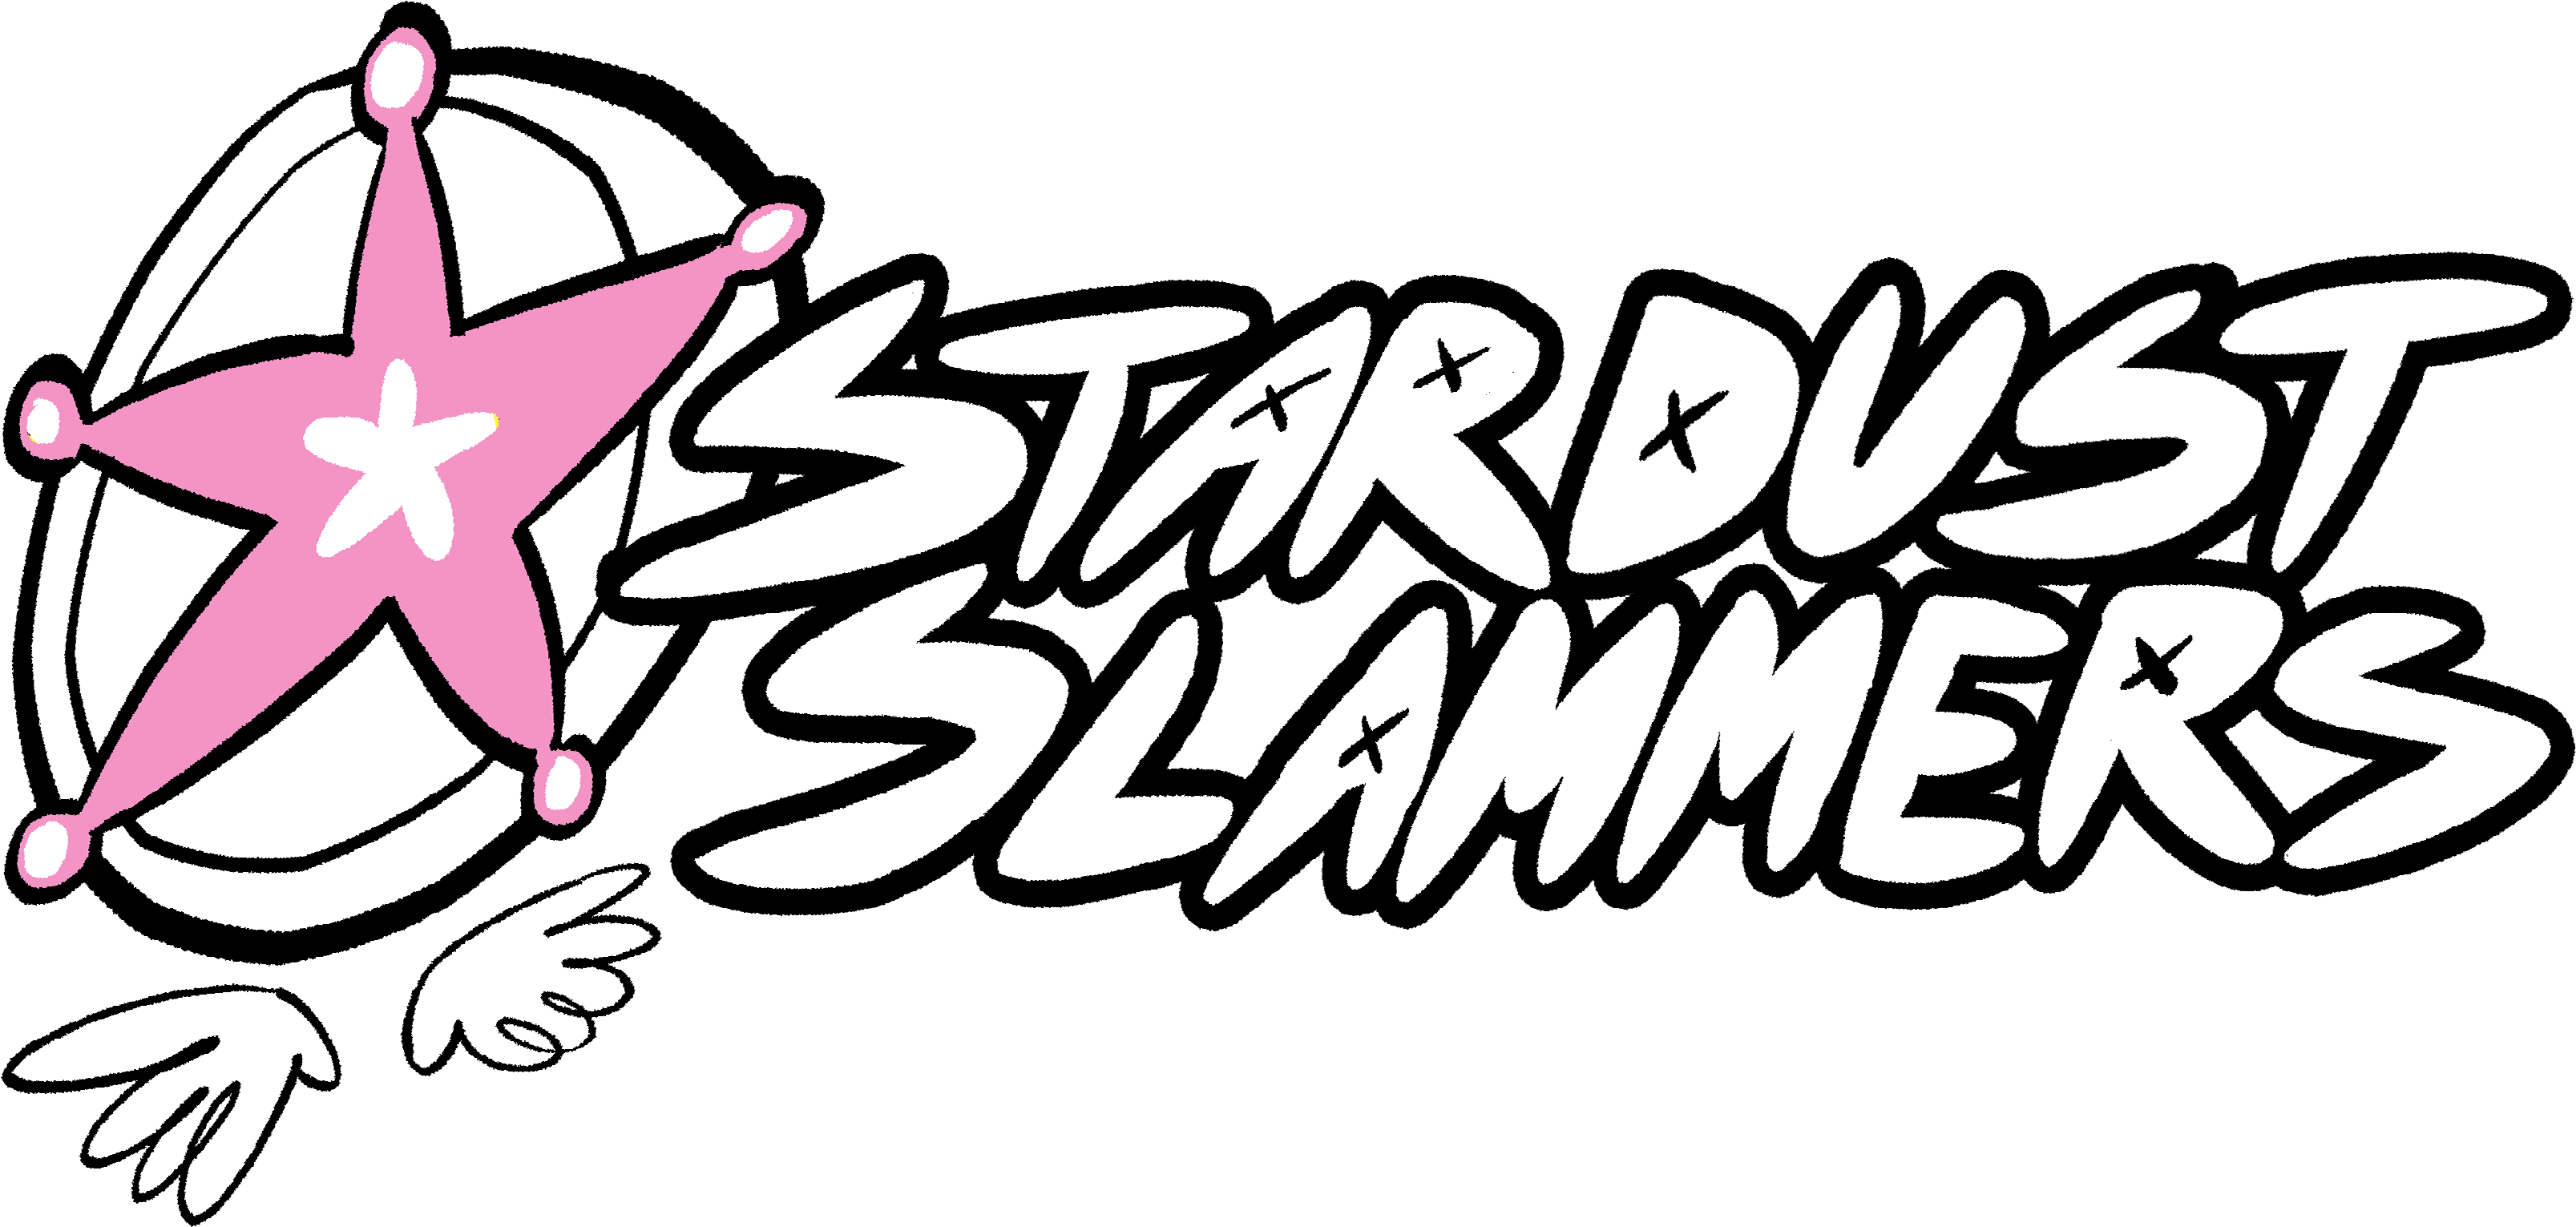 Stardust Slammers Stardust Slammers - Stardust Slammers Stardust Slammers (3488x1745)